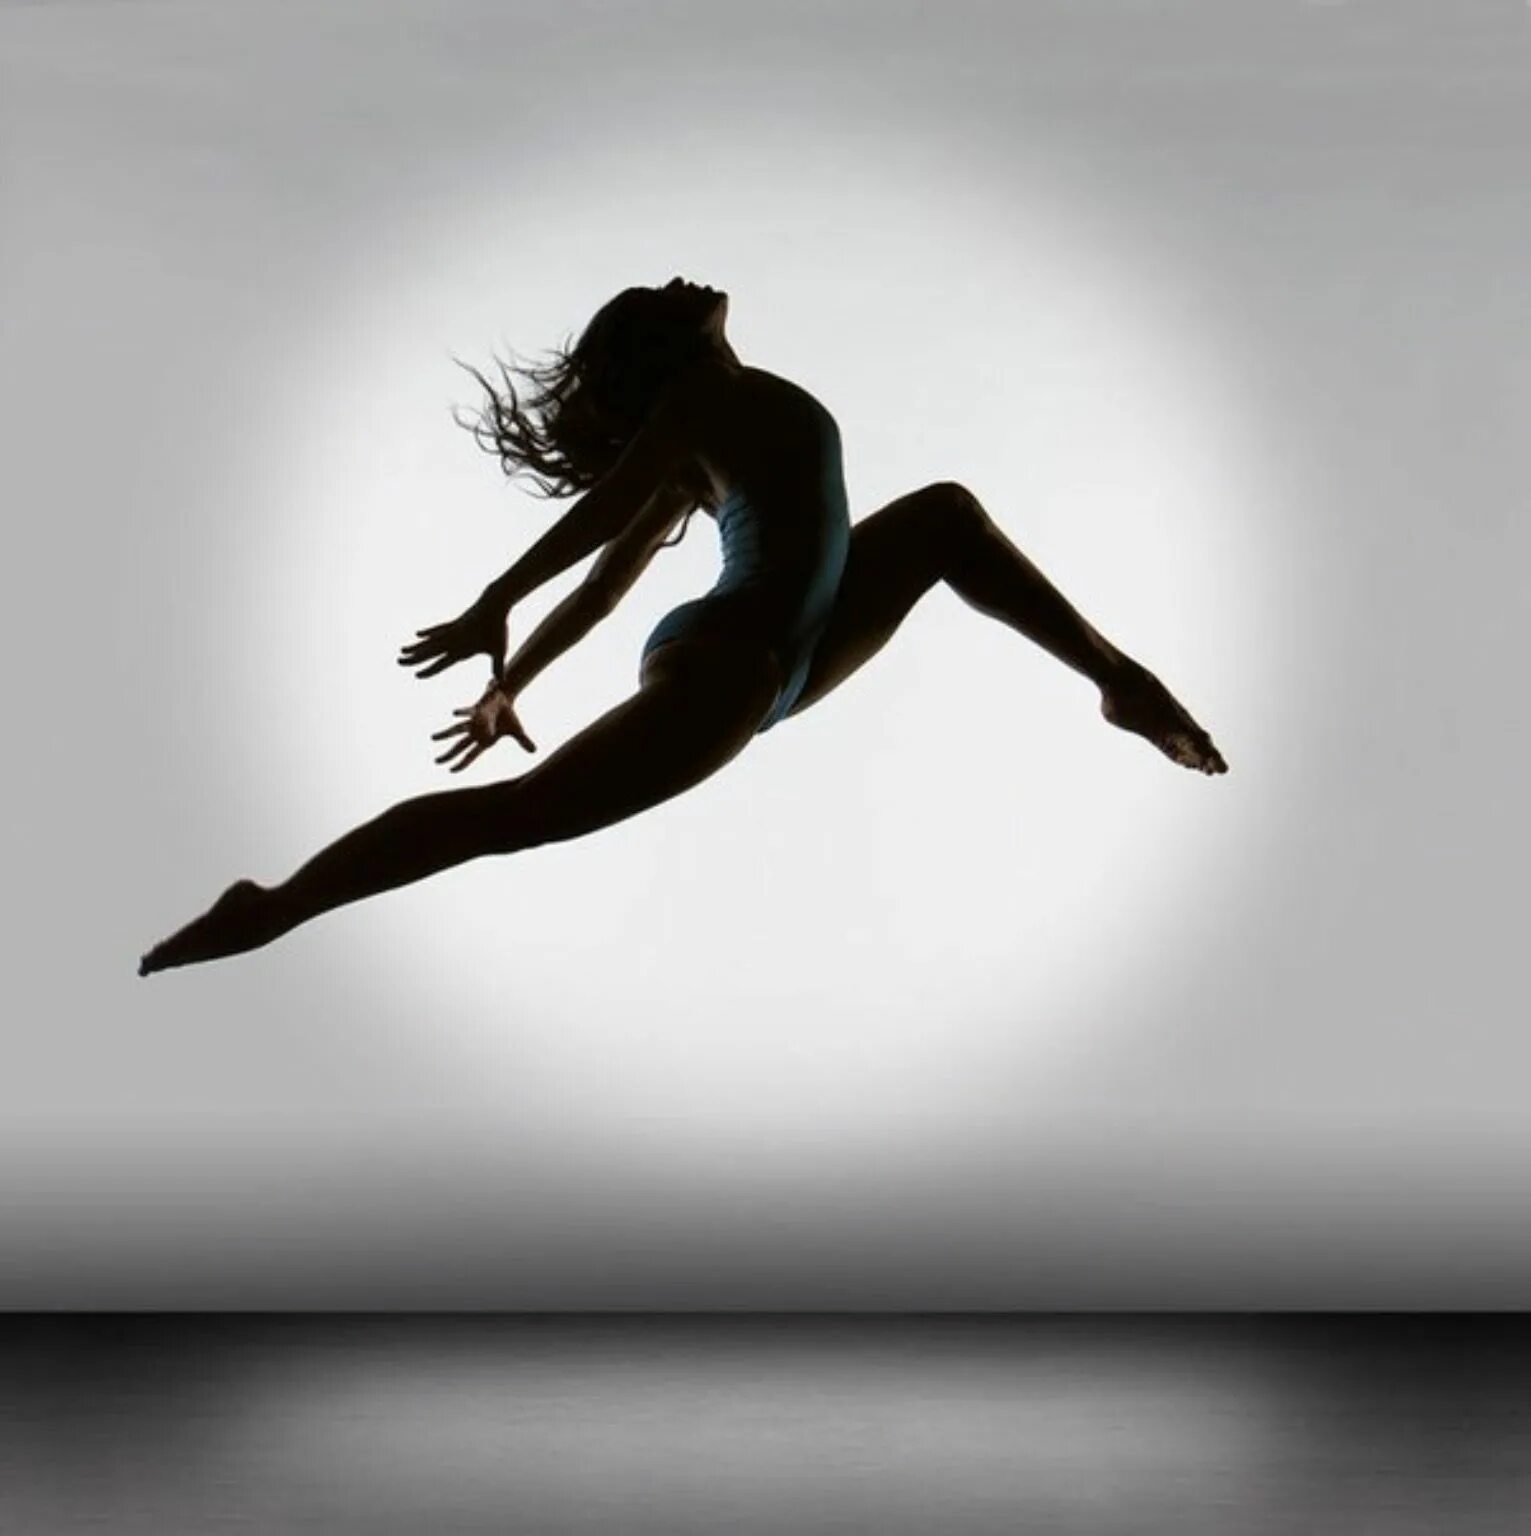 Жизнь есть танец. Балерины от Richard calmes. Richard calmes photographer. Современные танцы. Девушка в движении.